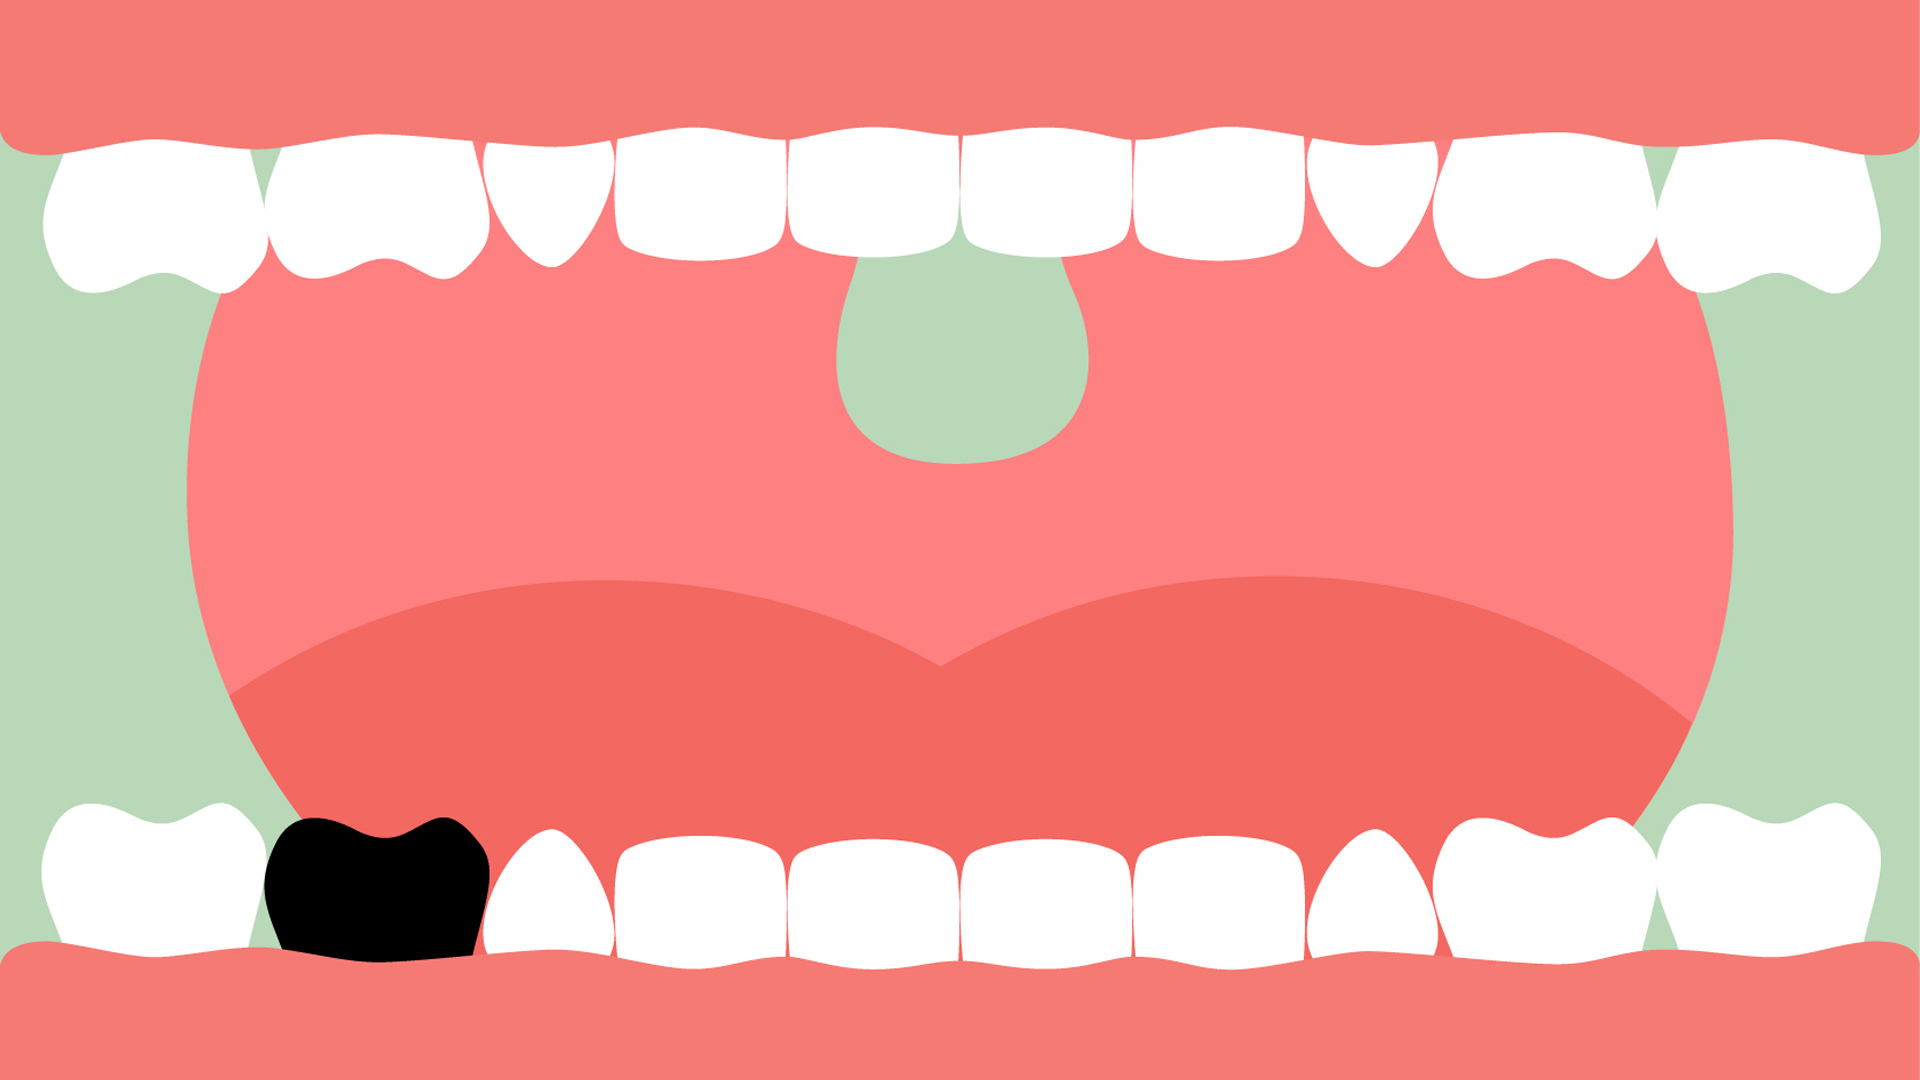 Grafik eines geöffneten Mundes